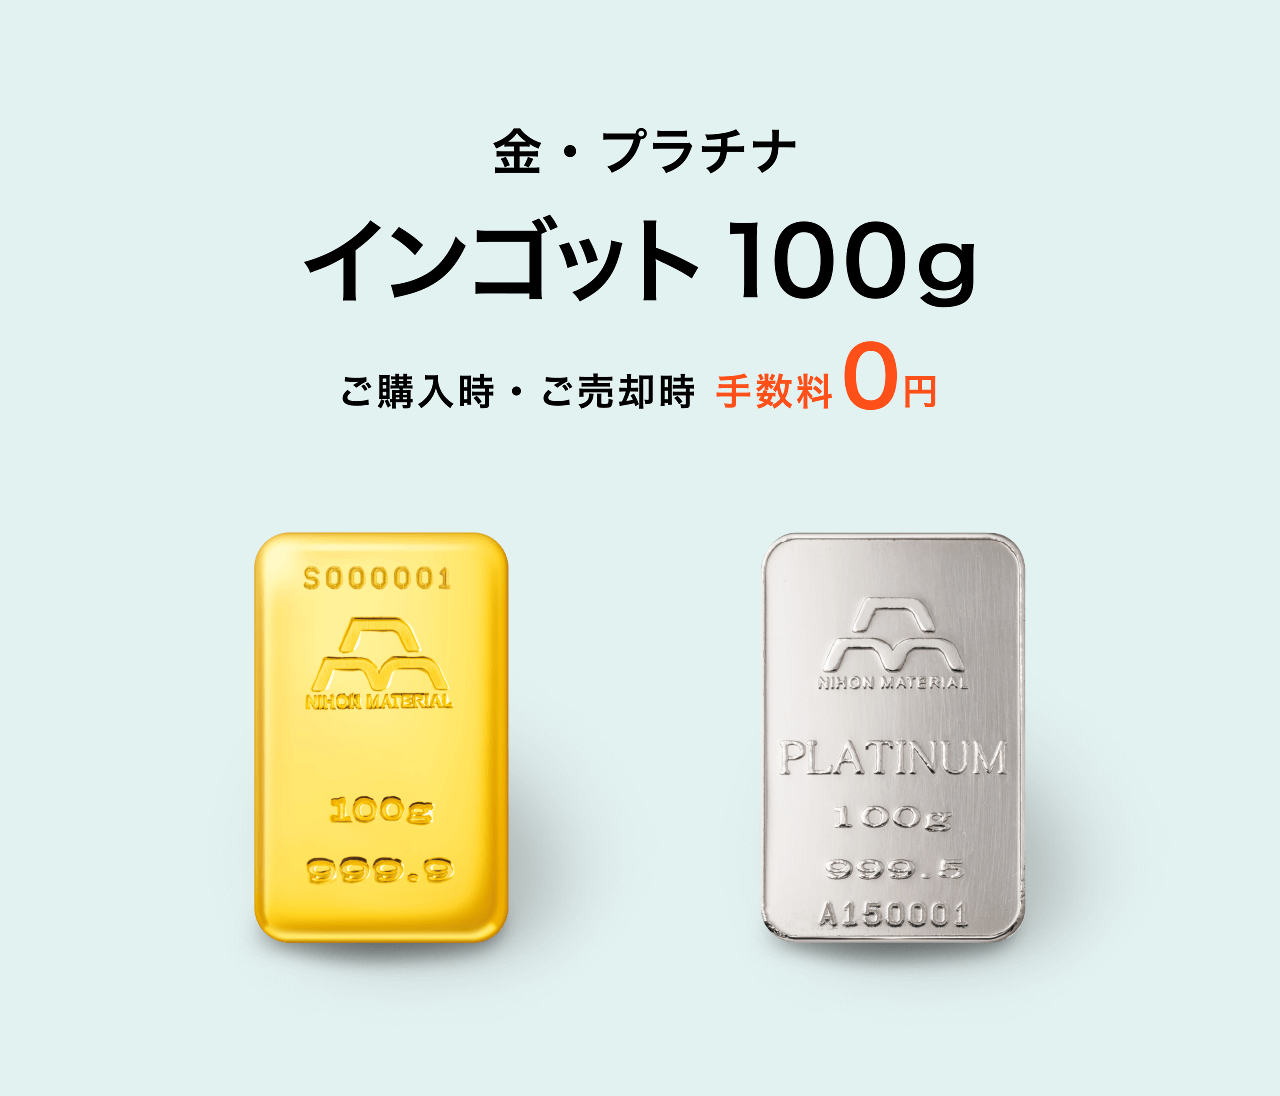 もちろん 【めぐみるく様用】純金インゴット 50g(日本マテリアル) もちろん